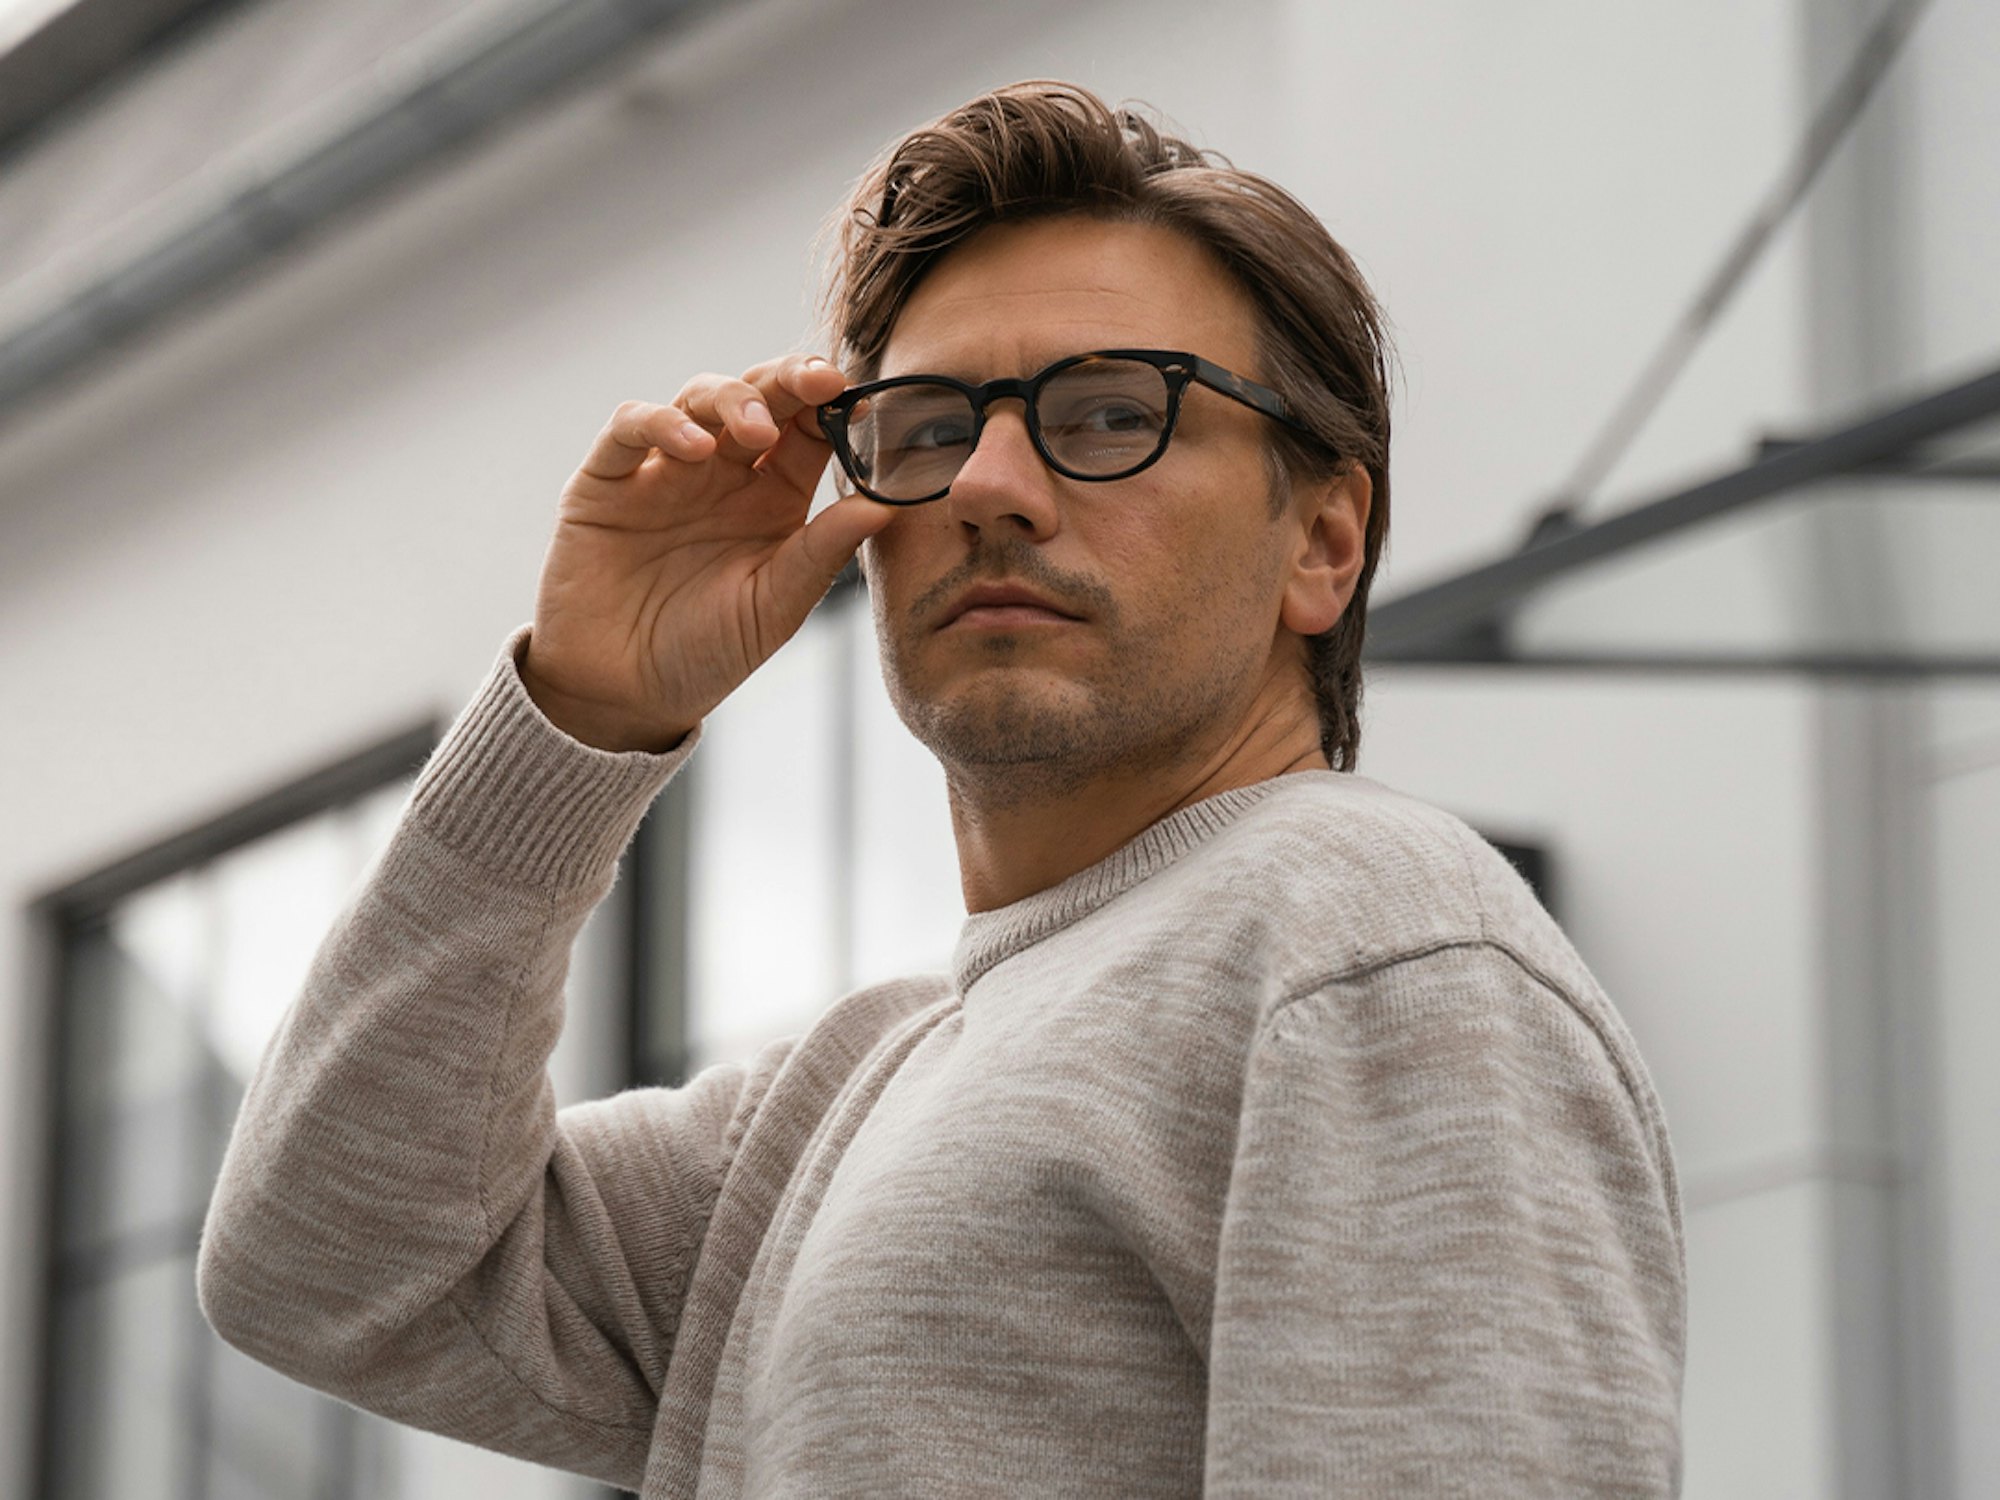 Bilde av mann med briller